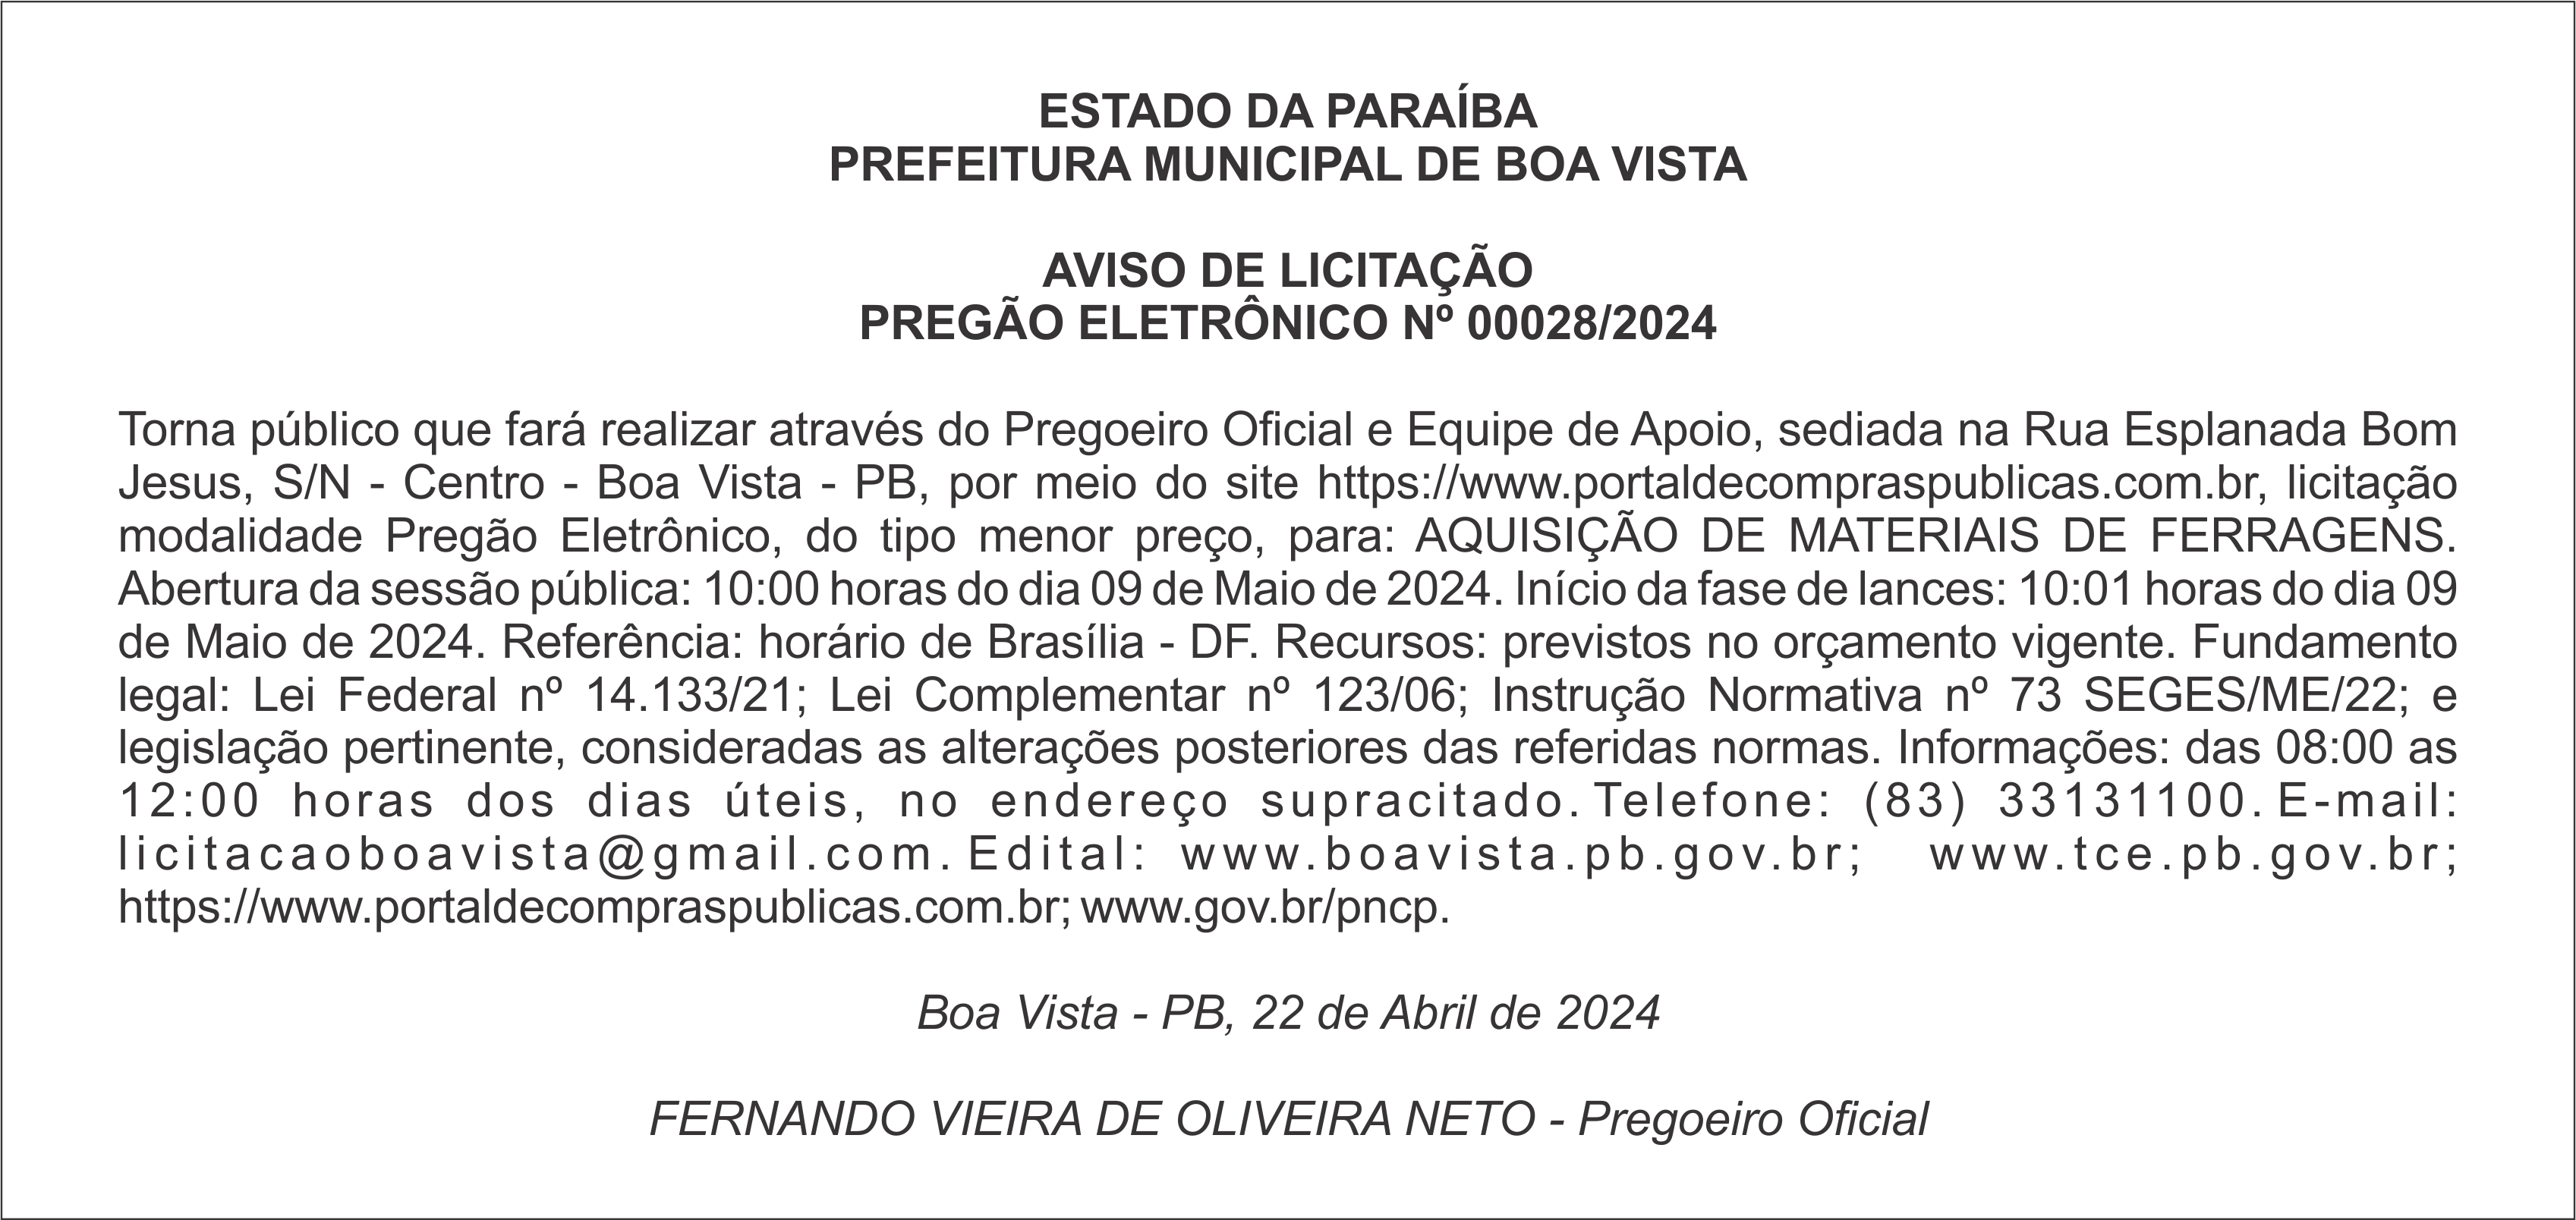 PREFEITURA MUNICIPAL DE BOA VISTA – AVISO DE LICITAÇÃO – PREGÃO ELETRÔNICO Nº 00028/2024